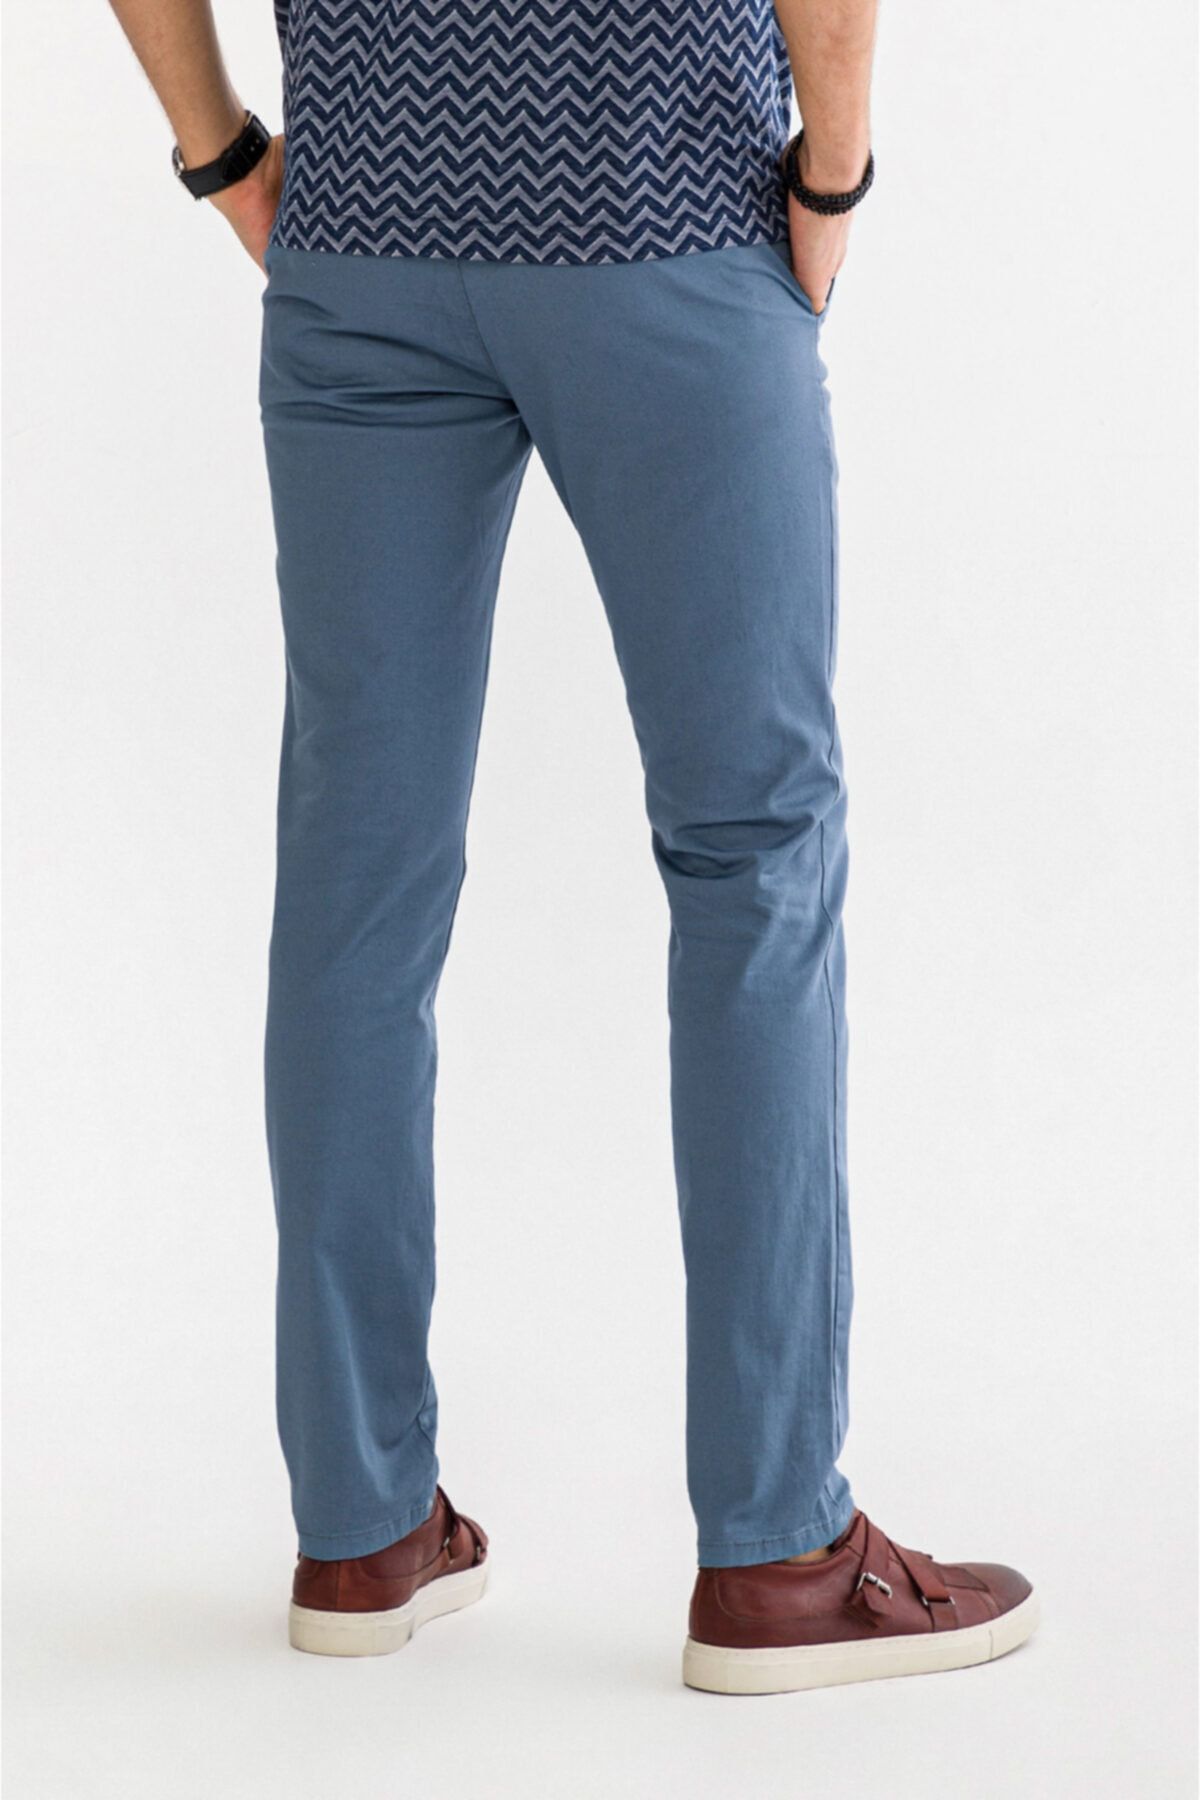 Erkek Açık Mavi Yandan Cepli Düz Slim Fit Pantolon A91b3556